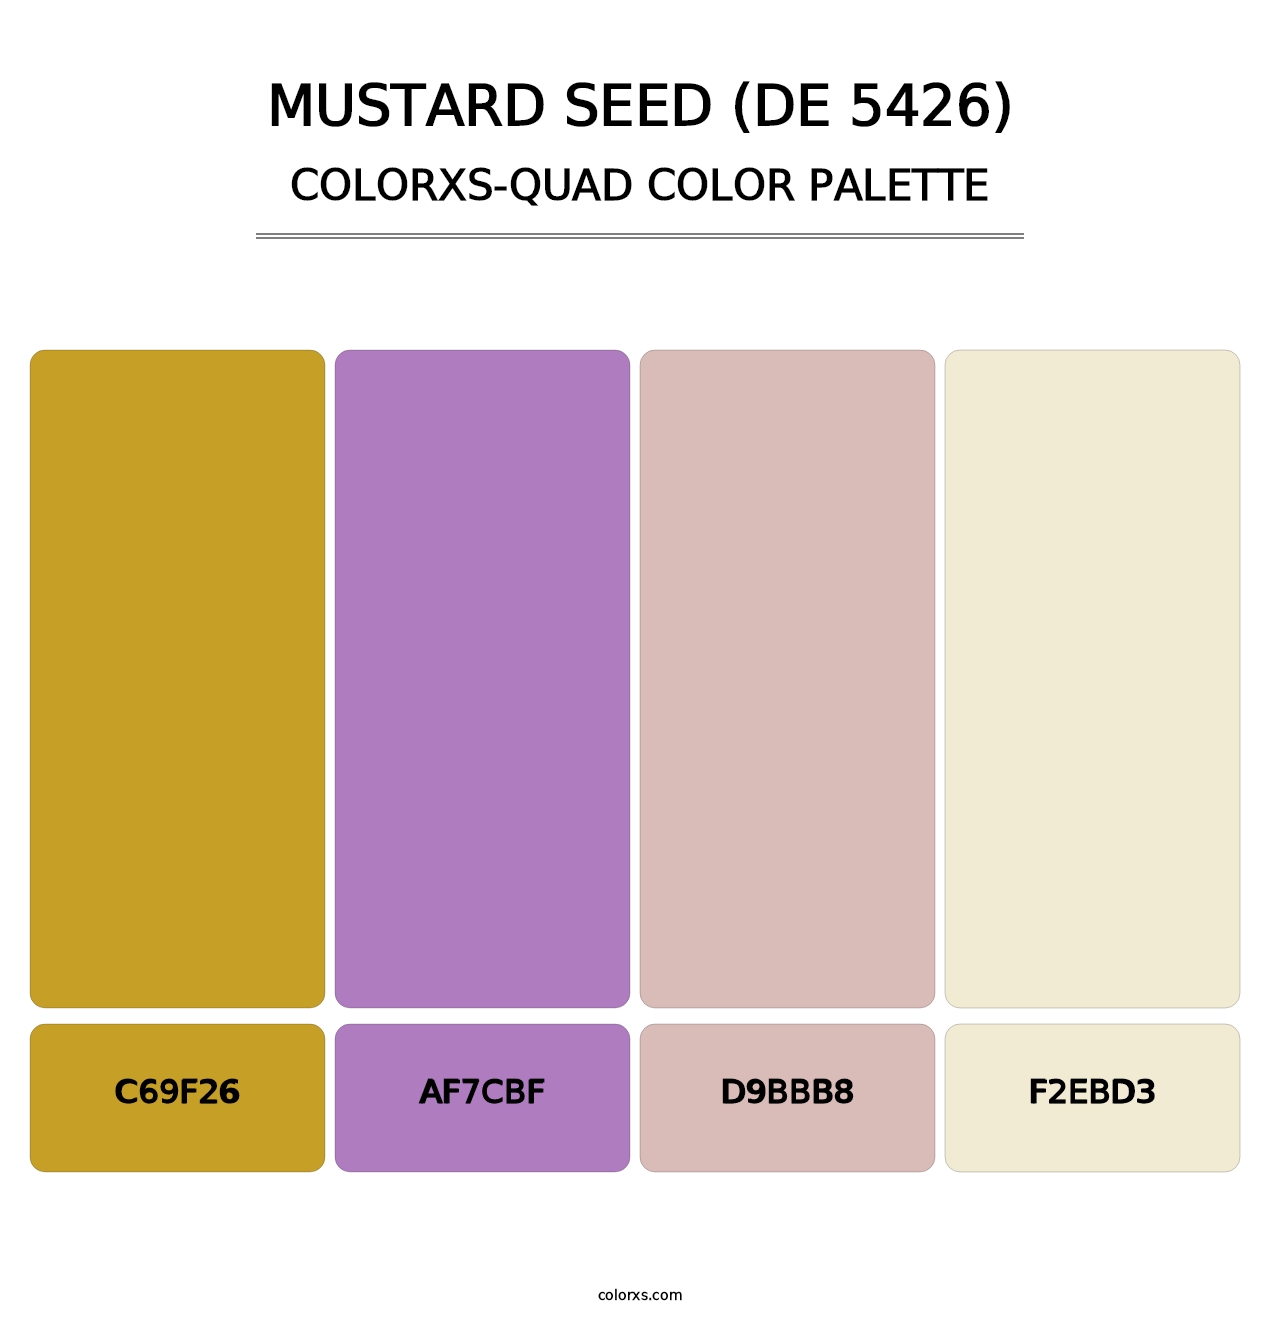 Mustard Seed (DE 5426) - Colorxs Quad Palette